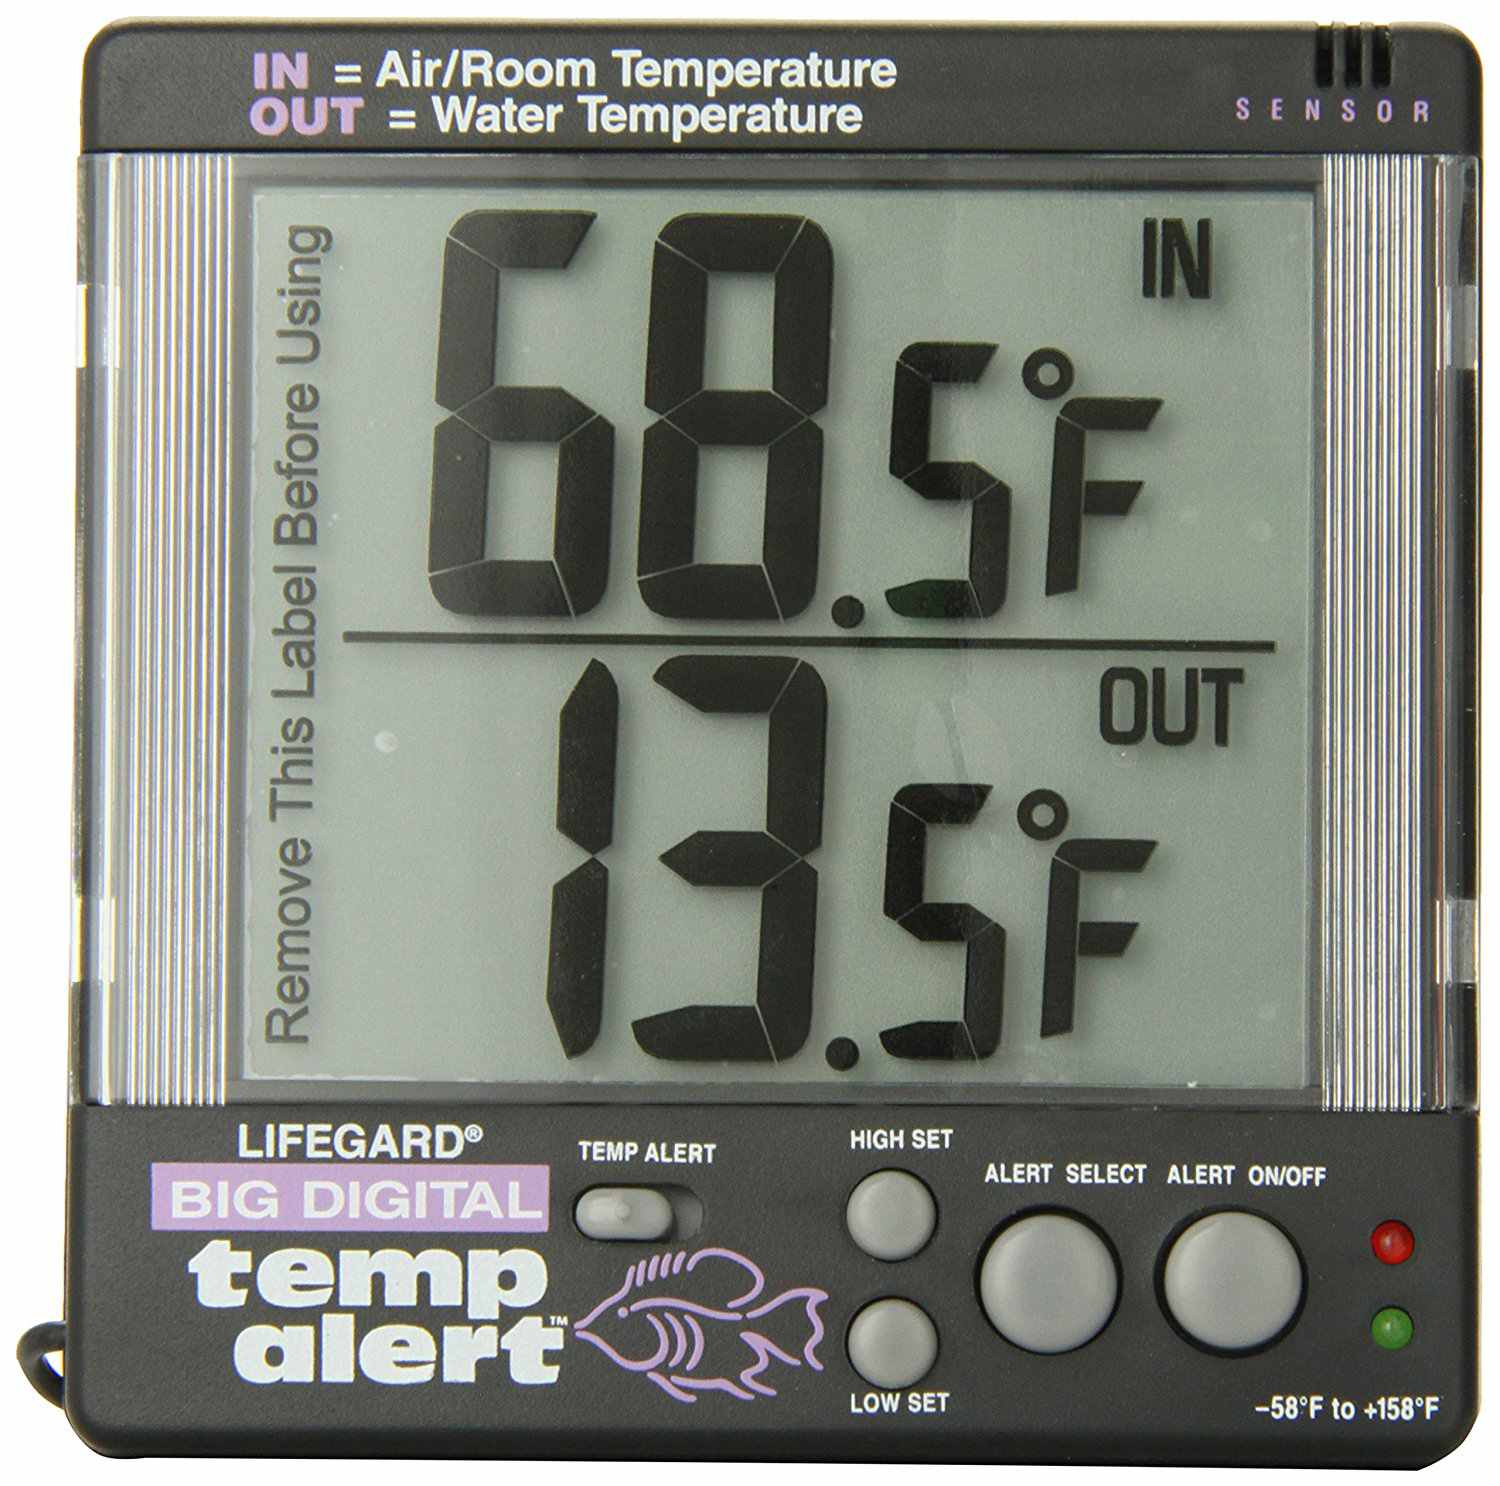 Aquarium digital thermometer